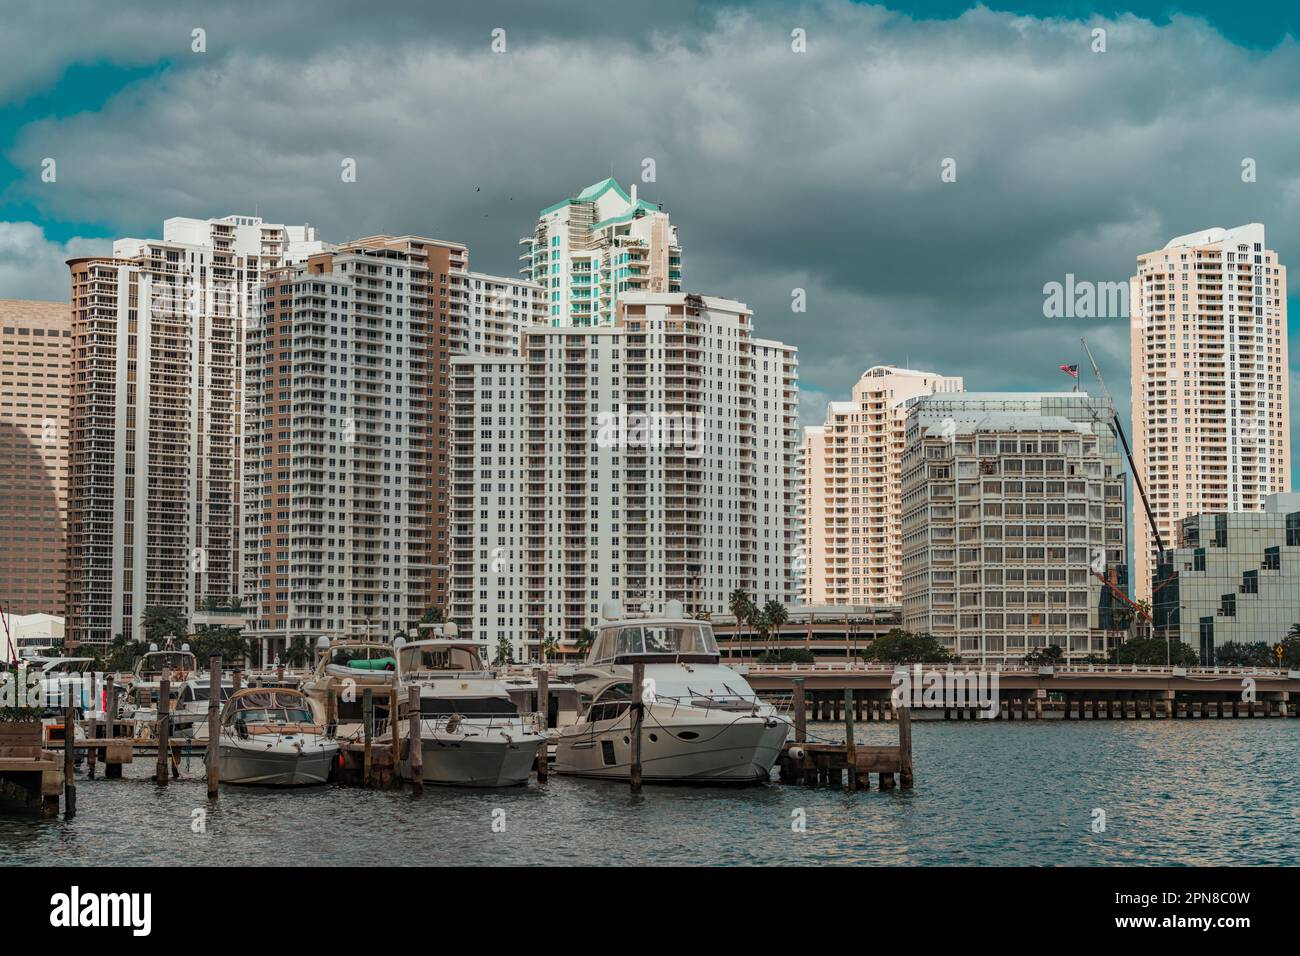 Mehrere Schiffe liegen vor einem Uferhintergrund mit majestätischen Gebäuden, die sich in den stillen Gewässern spiegeln Stockfoto